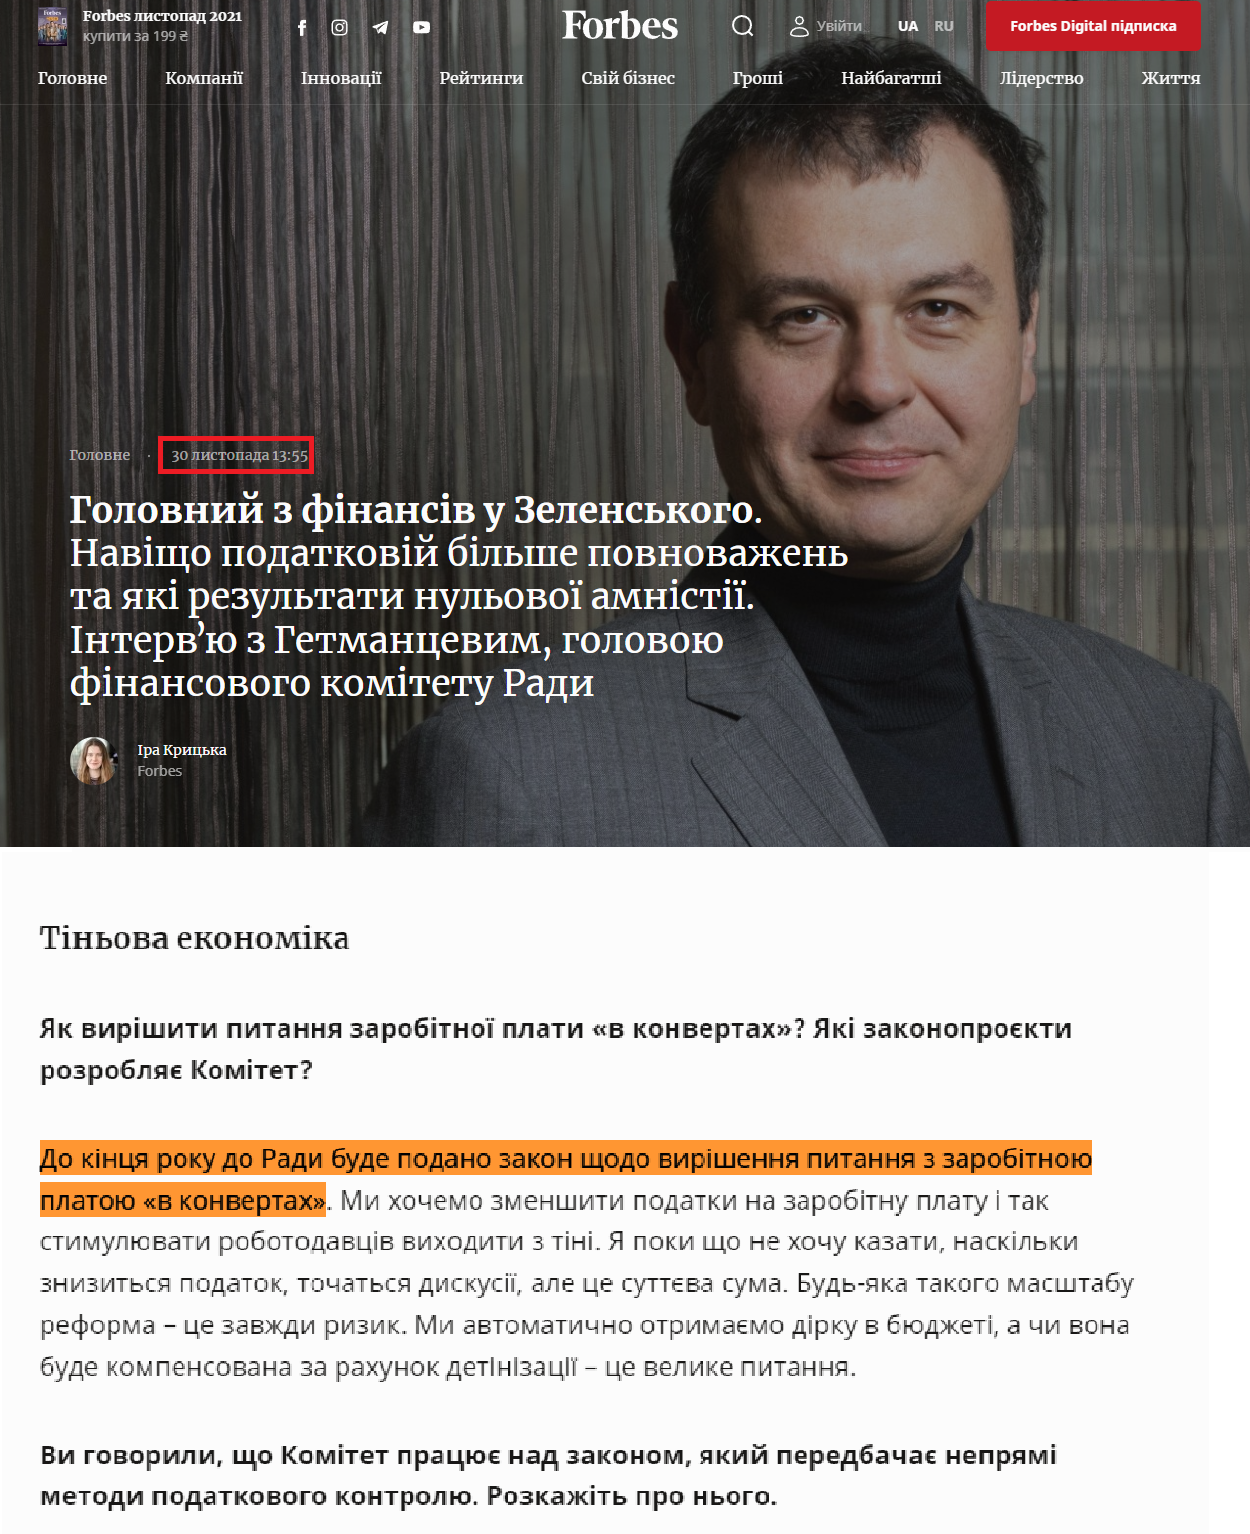 https://forbes.ua/news/zachem-nalogovoy-bolshe-polnomochiy-i-kakie-rezultaty-nulevoy-amnistii-intervyu-s-daniilom-getmantsevym-glavnym-30112021-2855